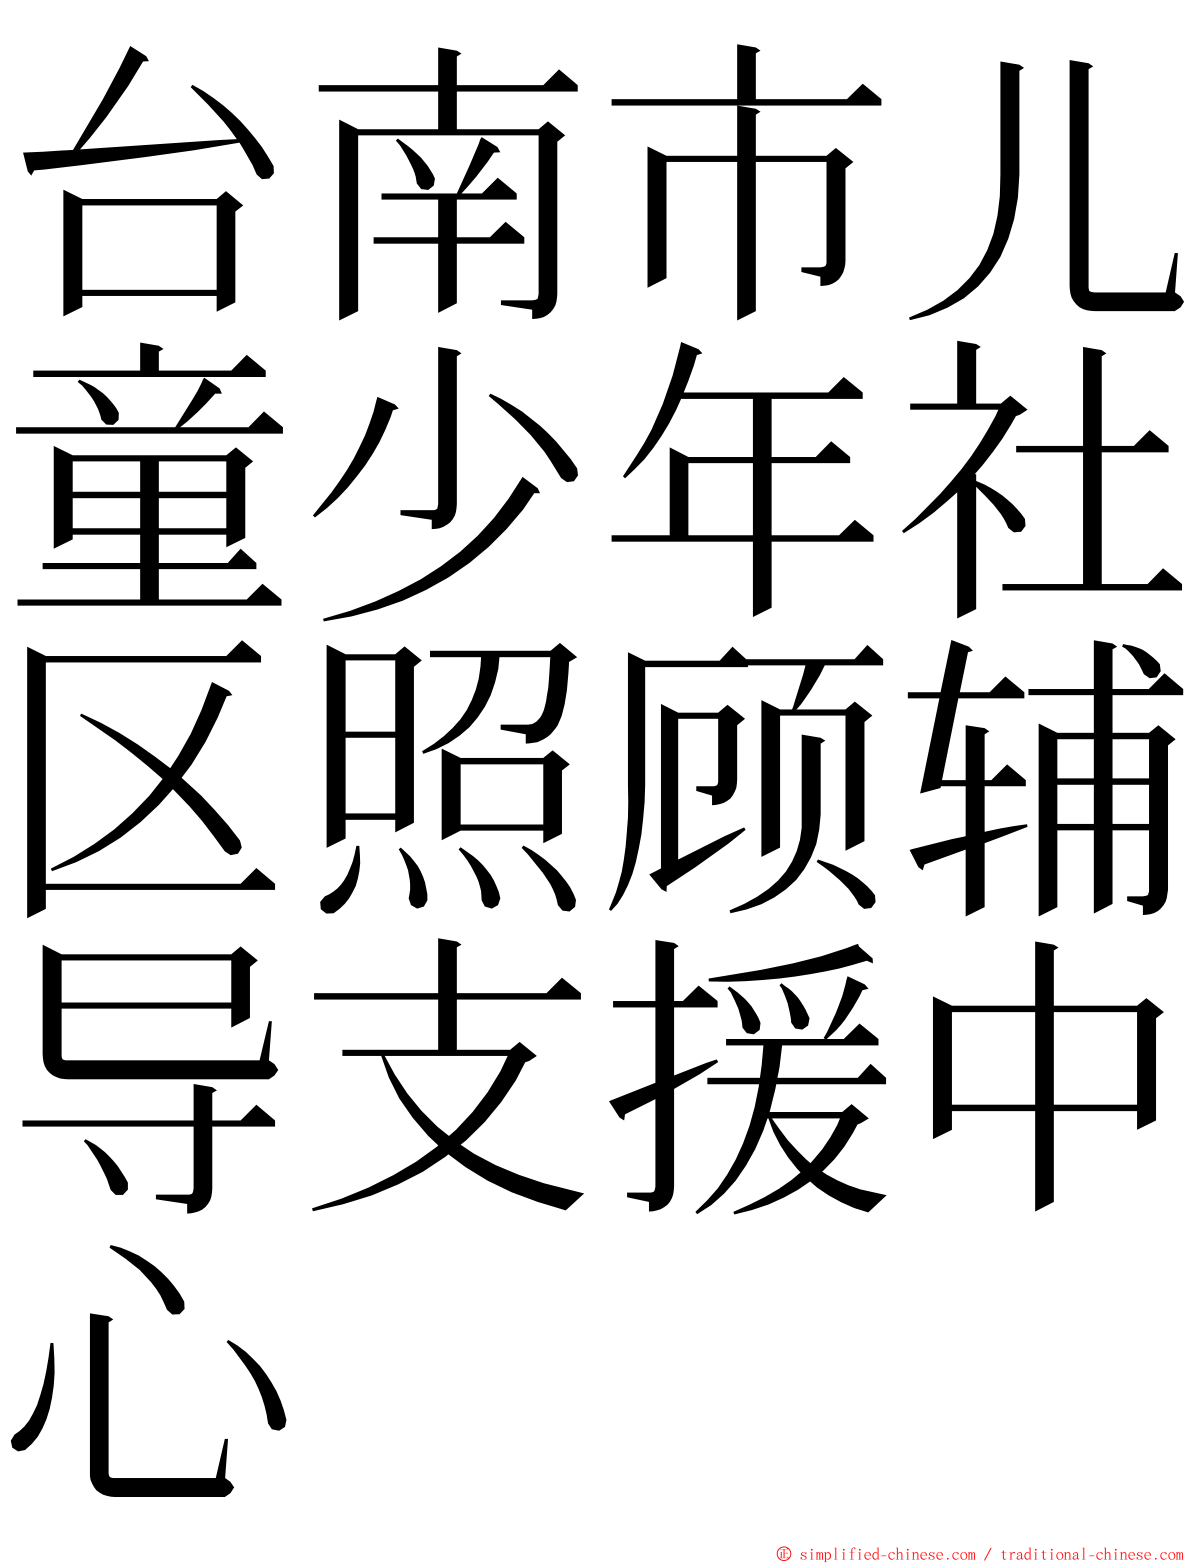 台南市儿童少年社区照顾辅导支援中心 ming font